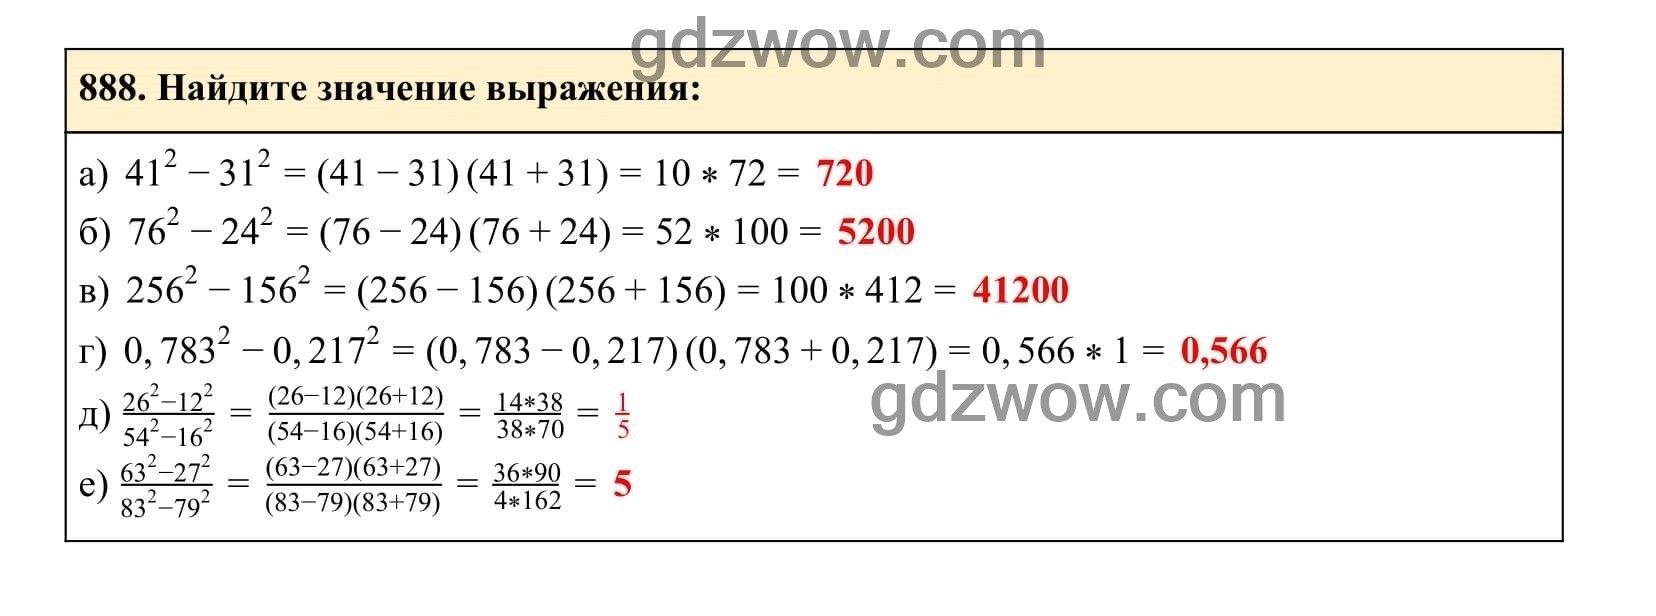 Упражнение 888 - ГДЗ по Алгебре 7 класс Учебник Макарычев (решебник) - GDZwow